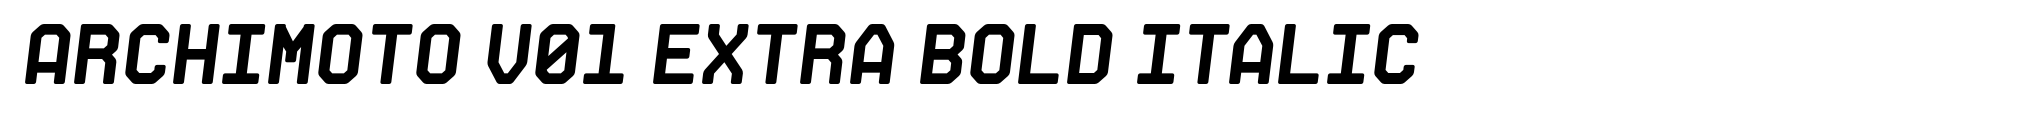 Archimoto V01 Extra Bold Italic image